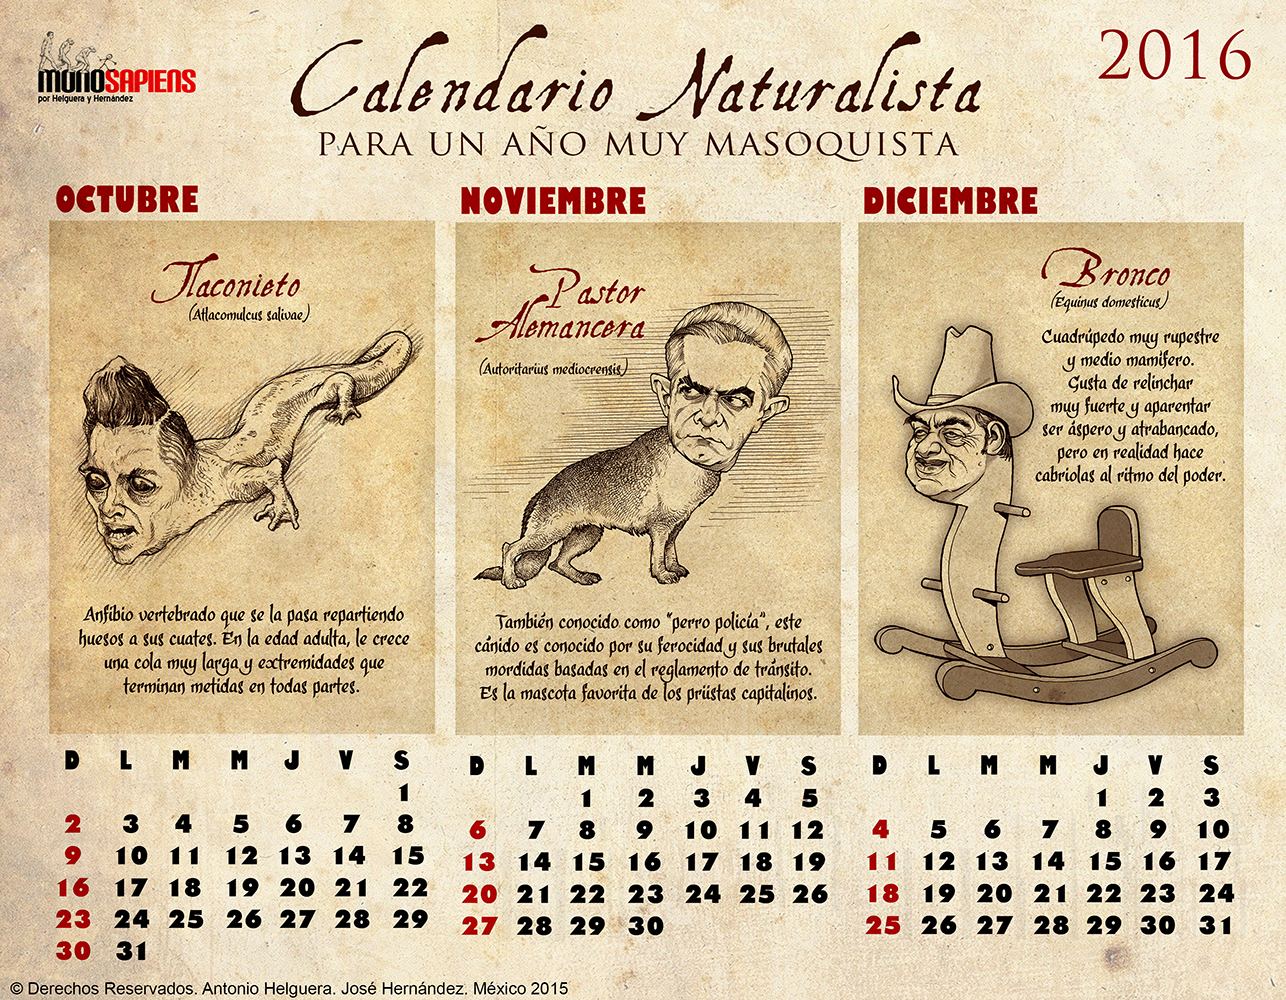 Calendario Naturalista para un año muy masoquista. 2016. Diciembre 2015.